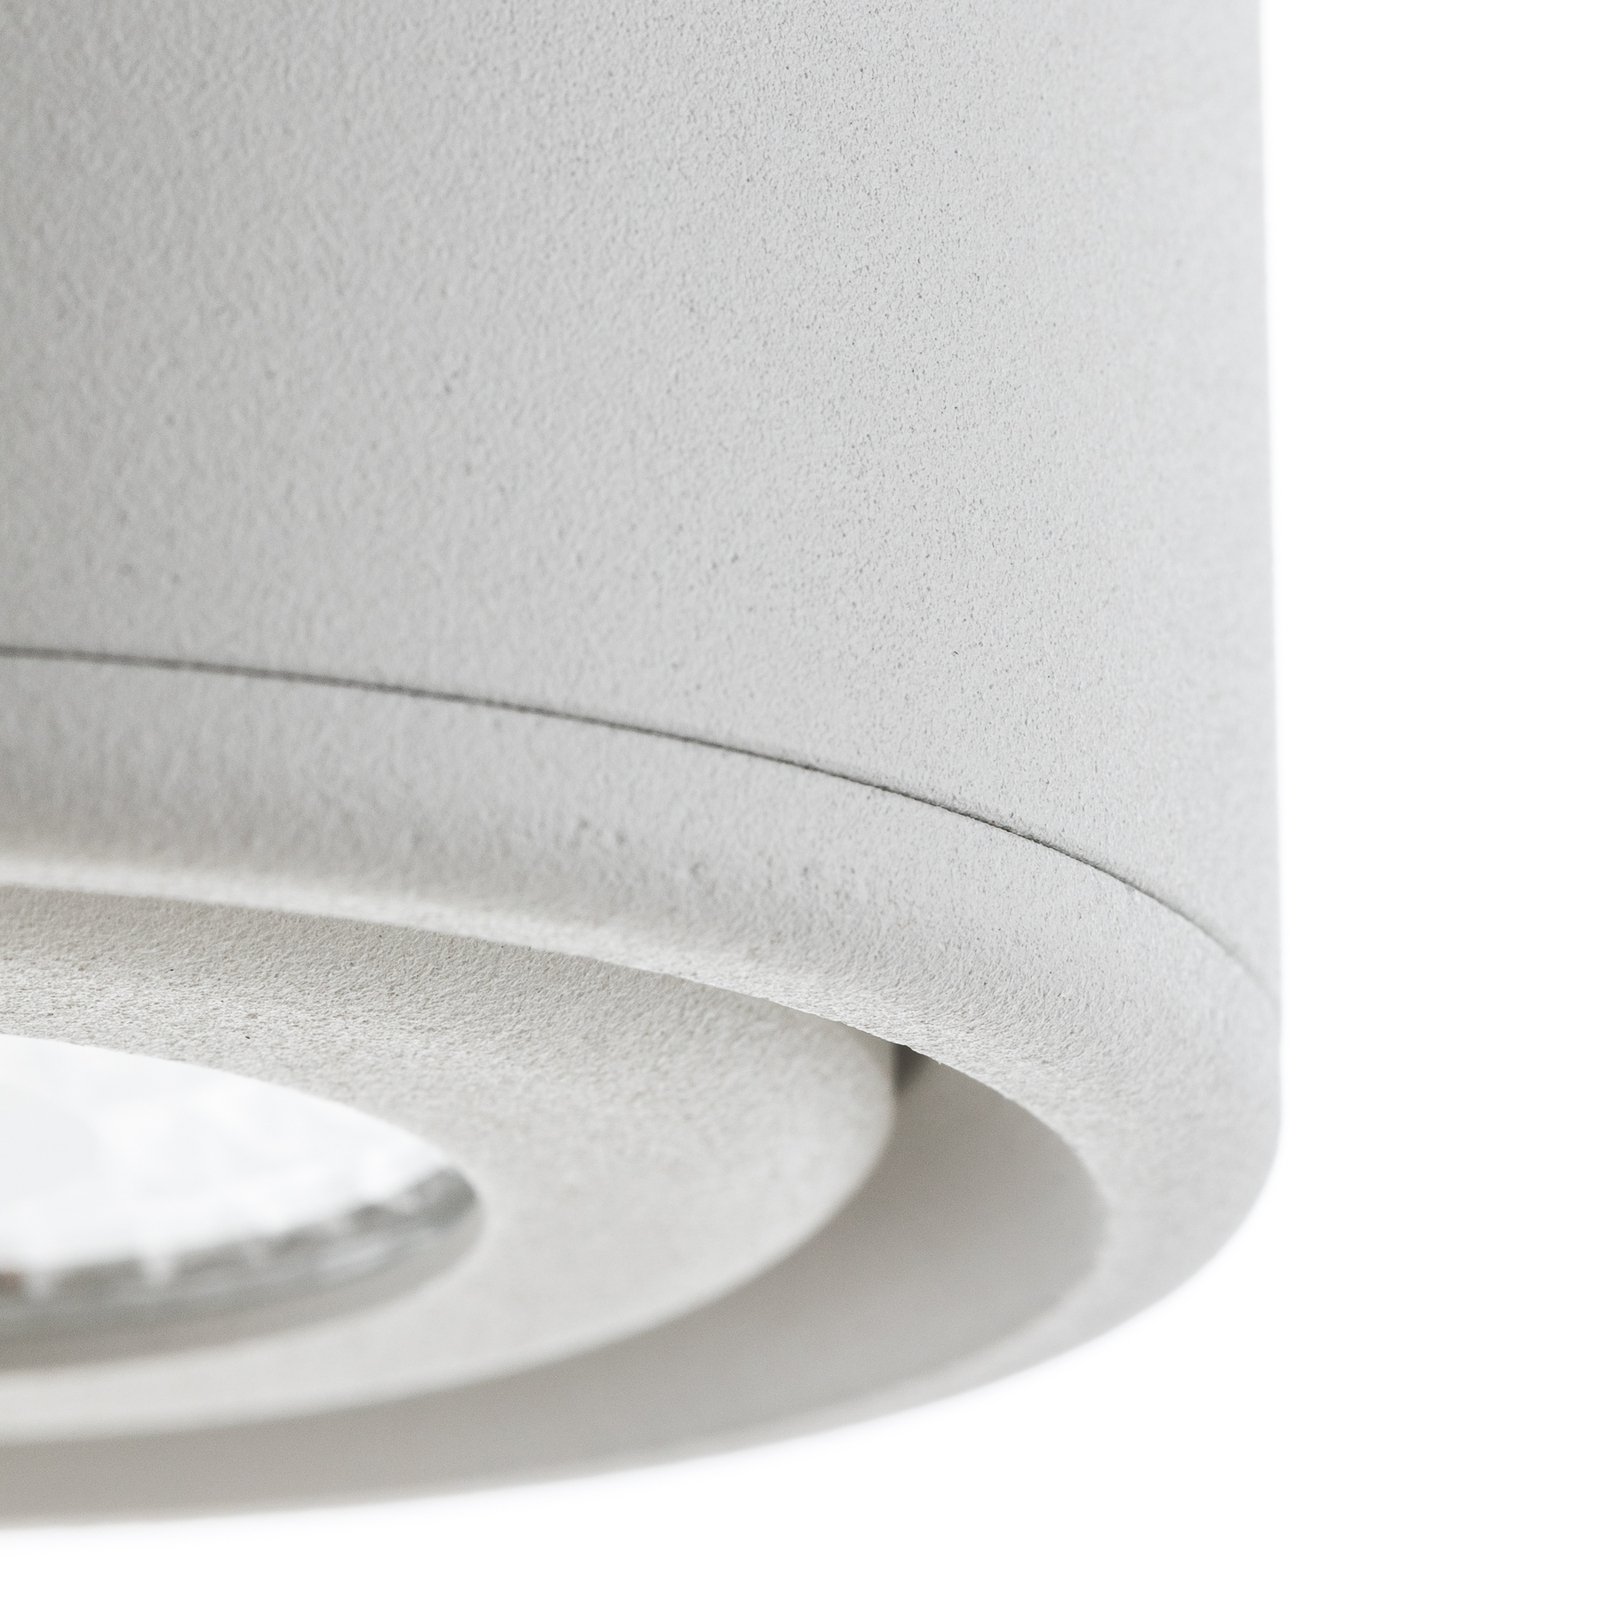 Odchylana głowica – downlight LED Anzio, biały